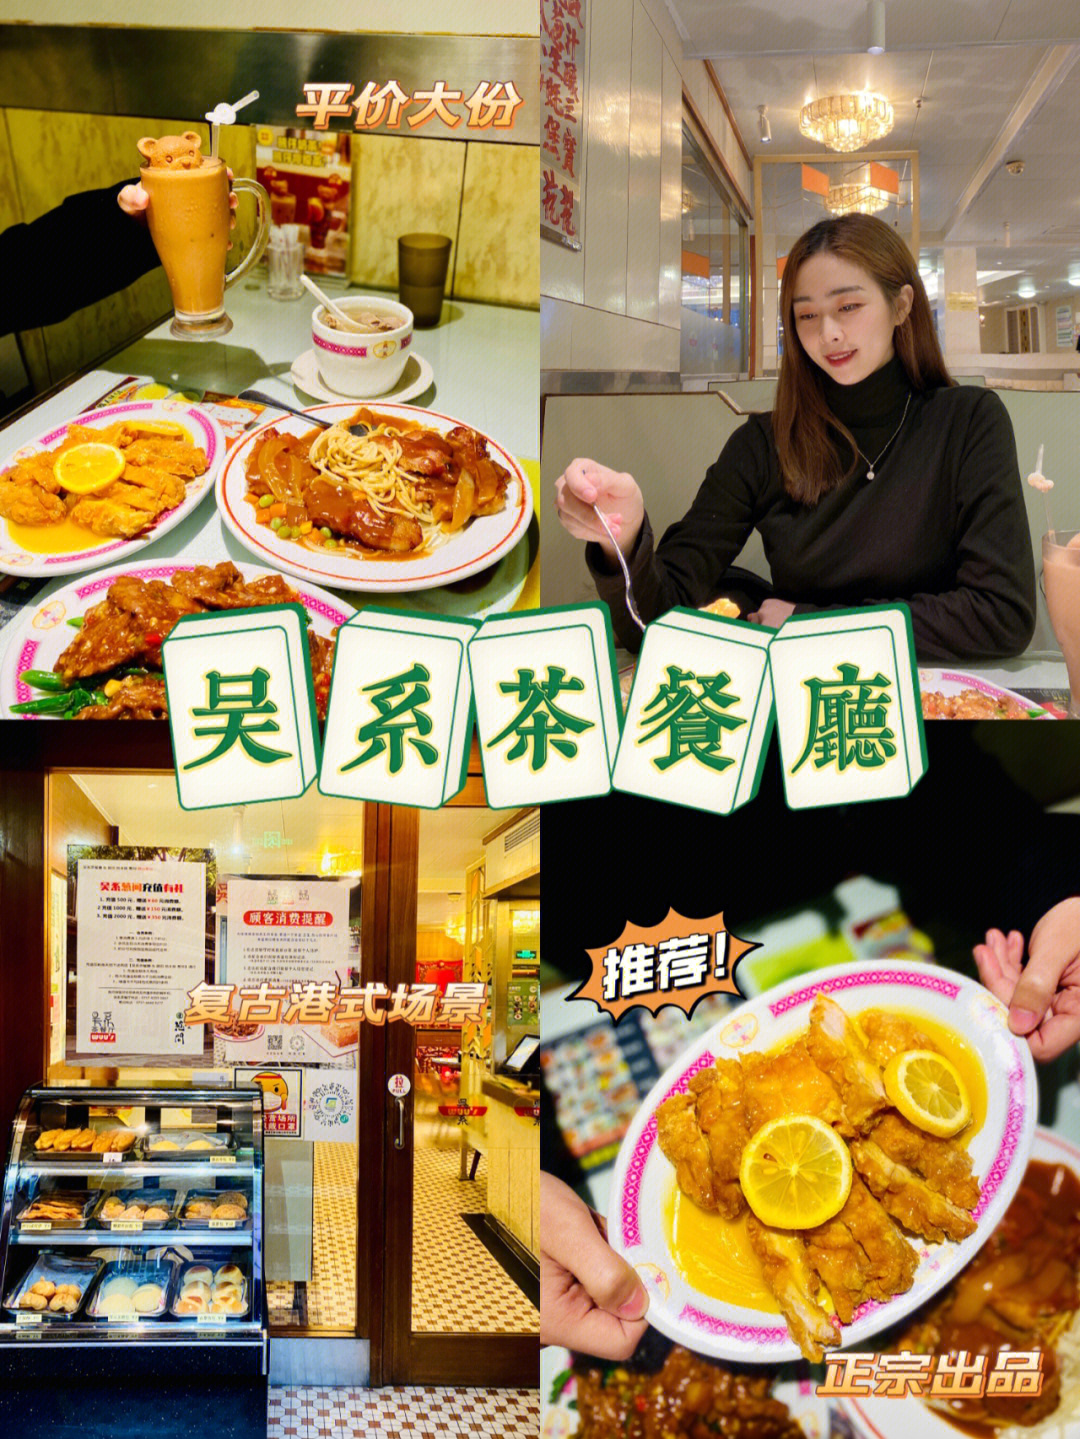 广州吴系茶餐厅图片